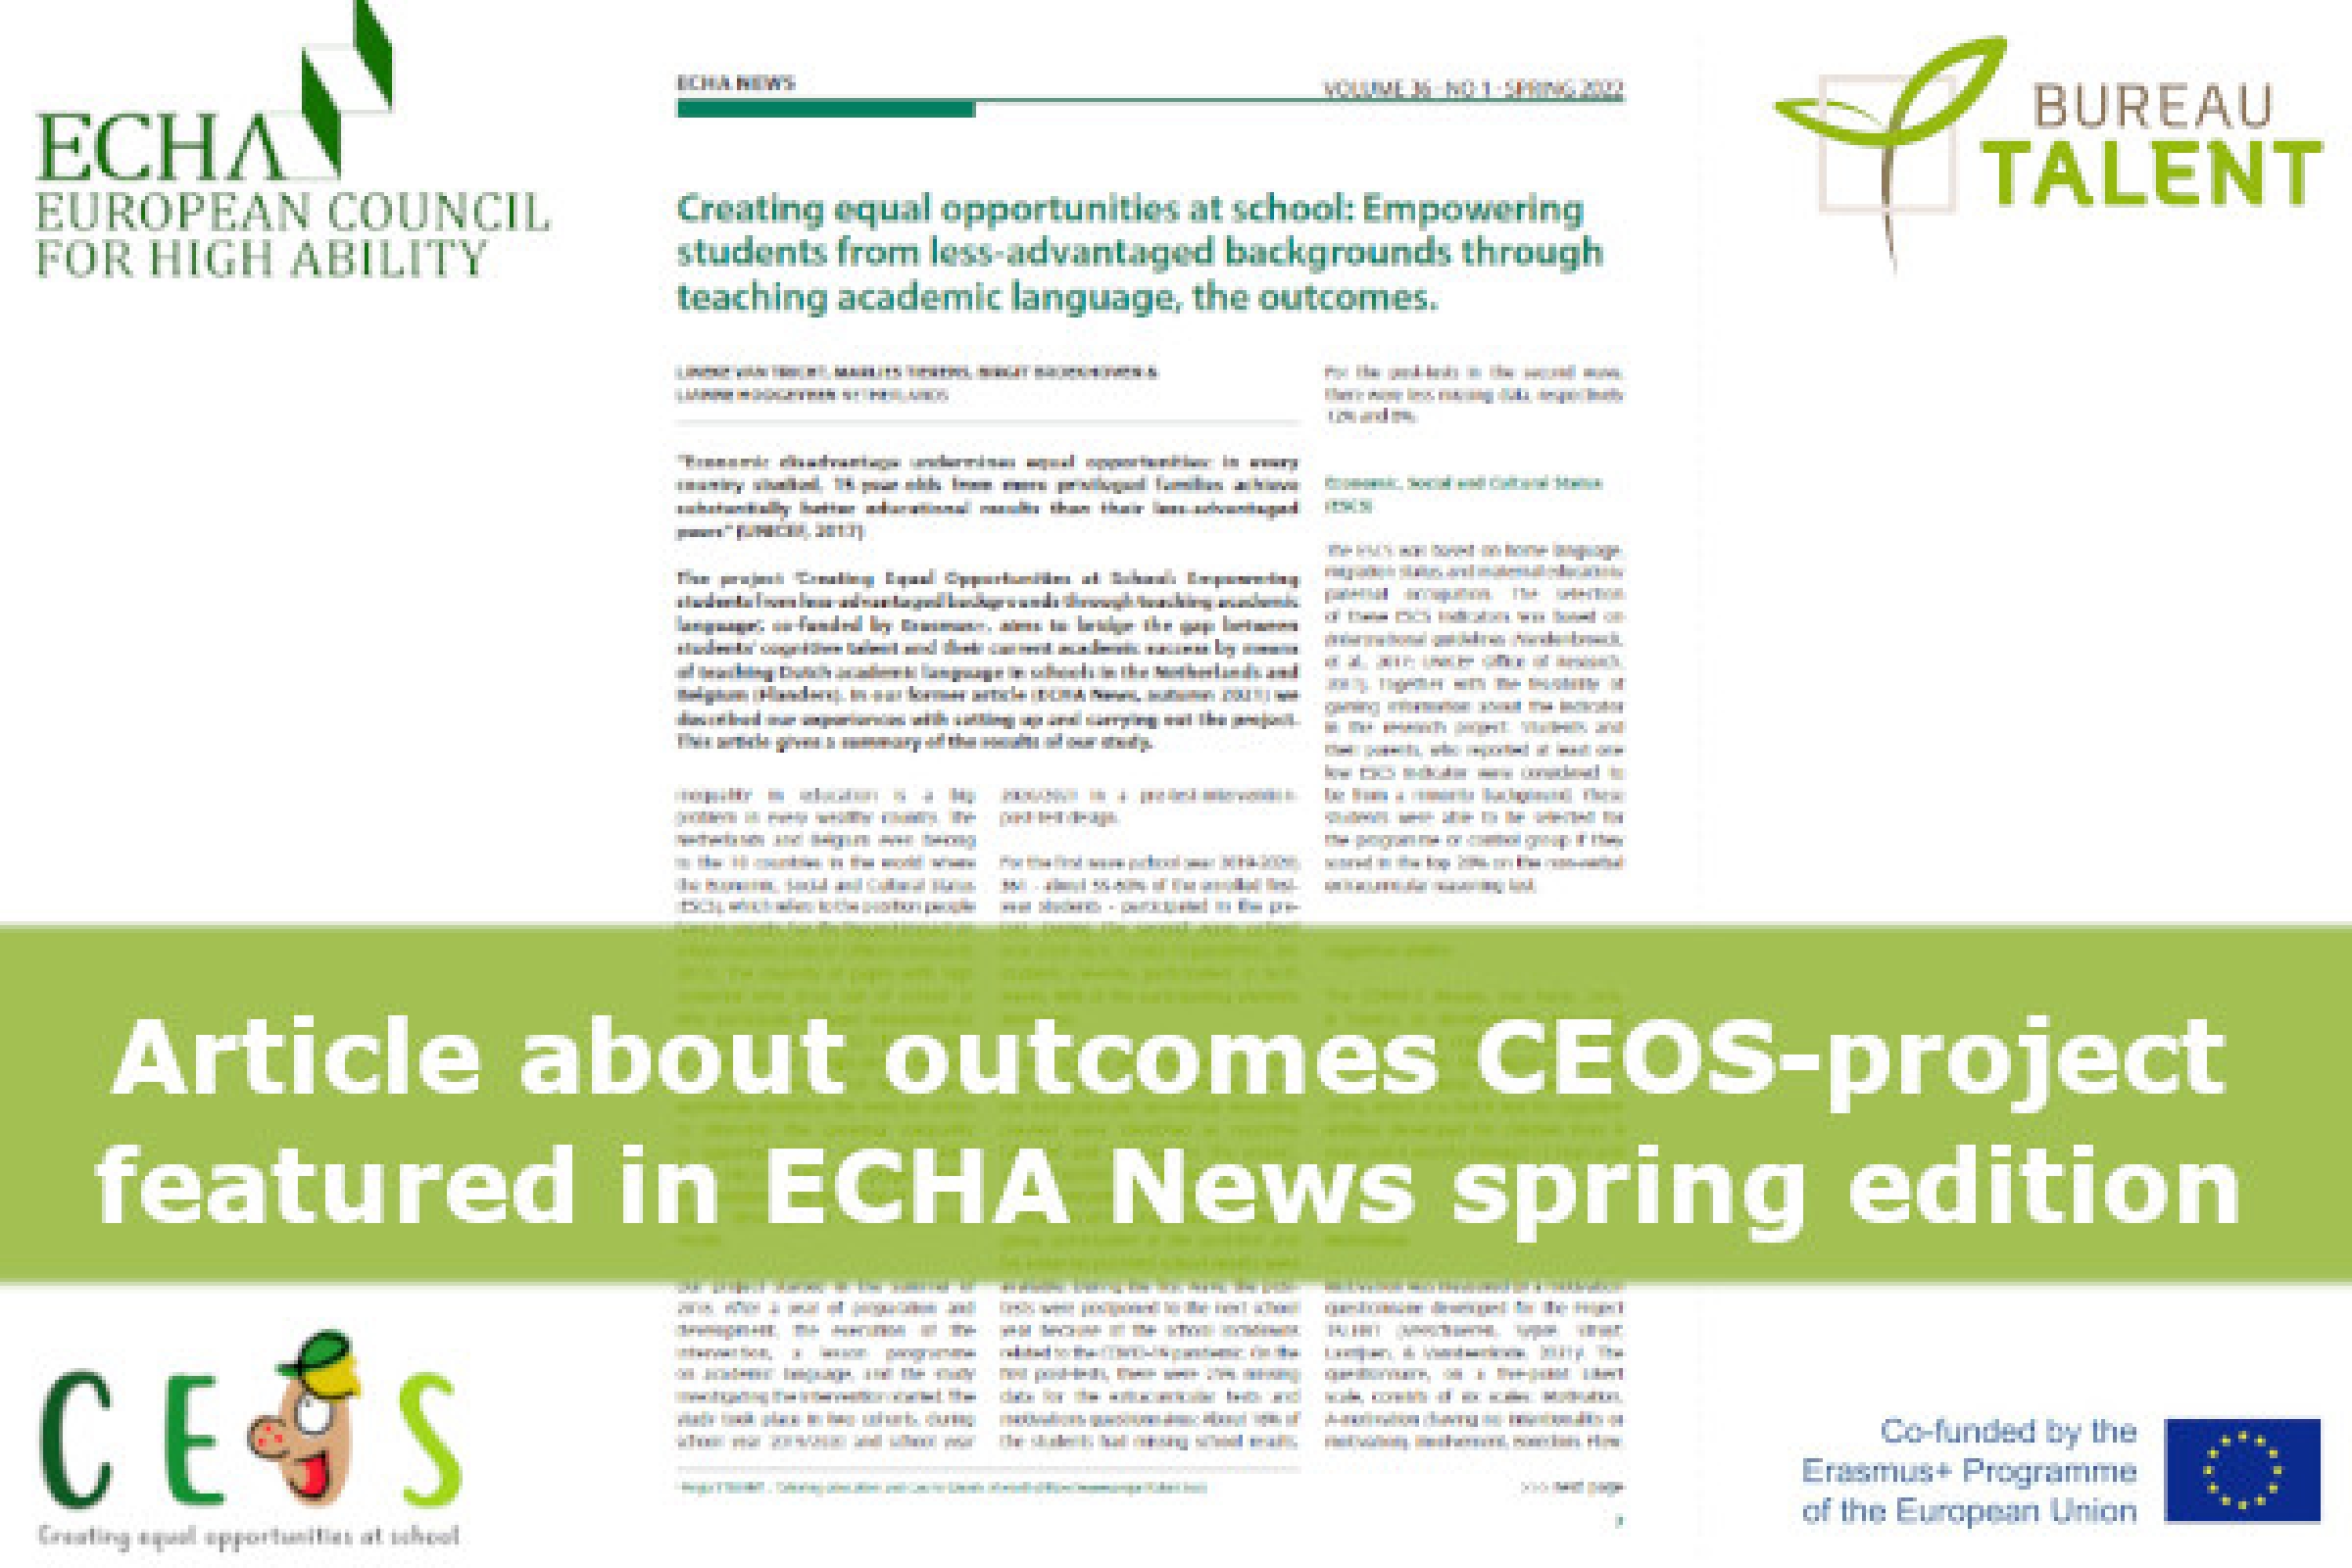 Outcomes CEOS project in ECHA News